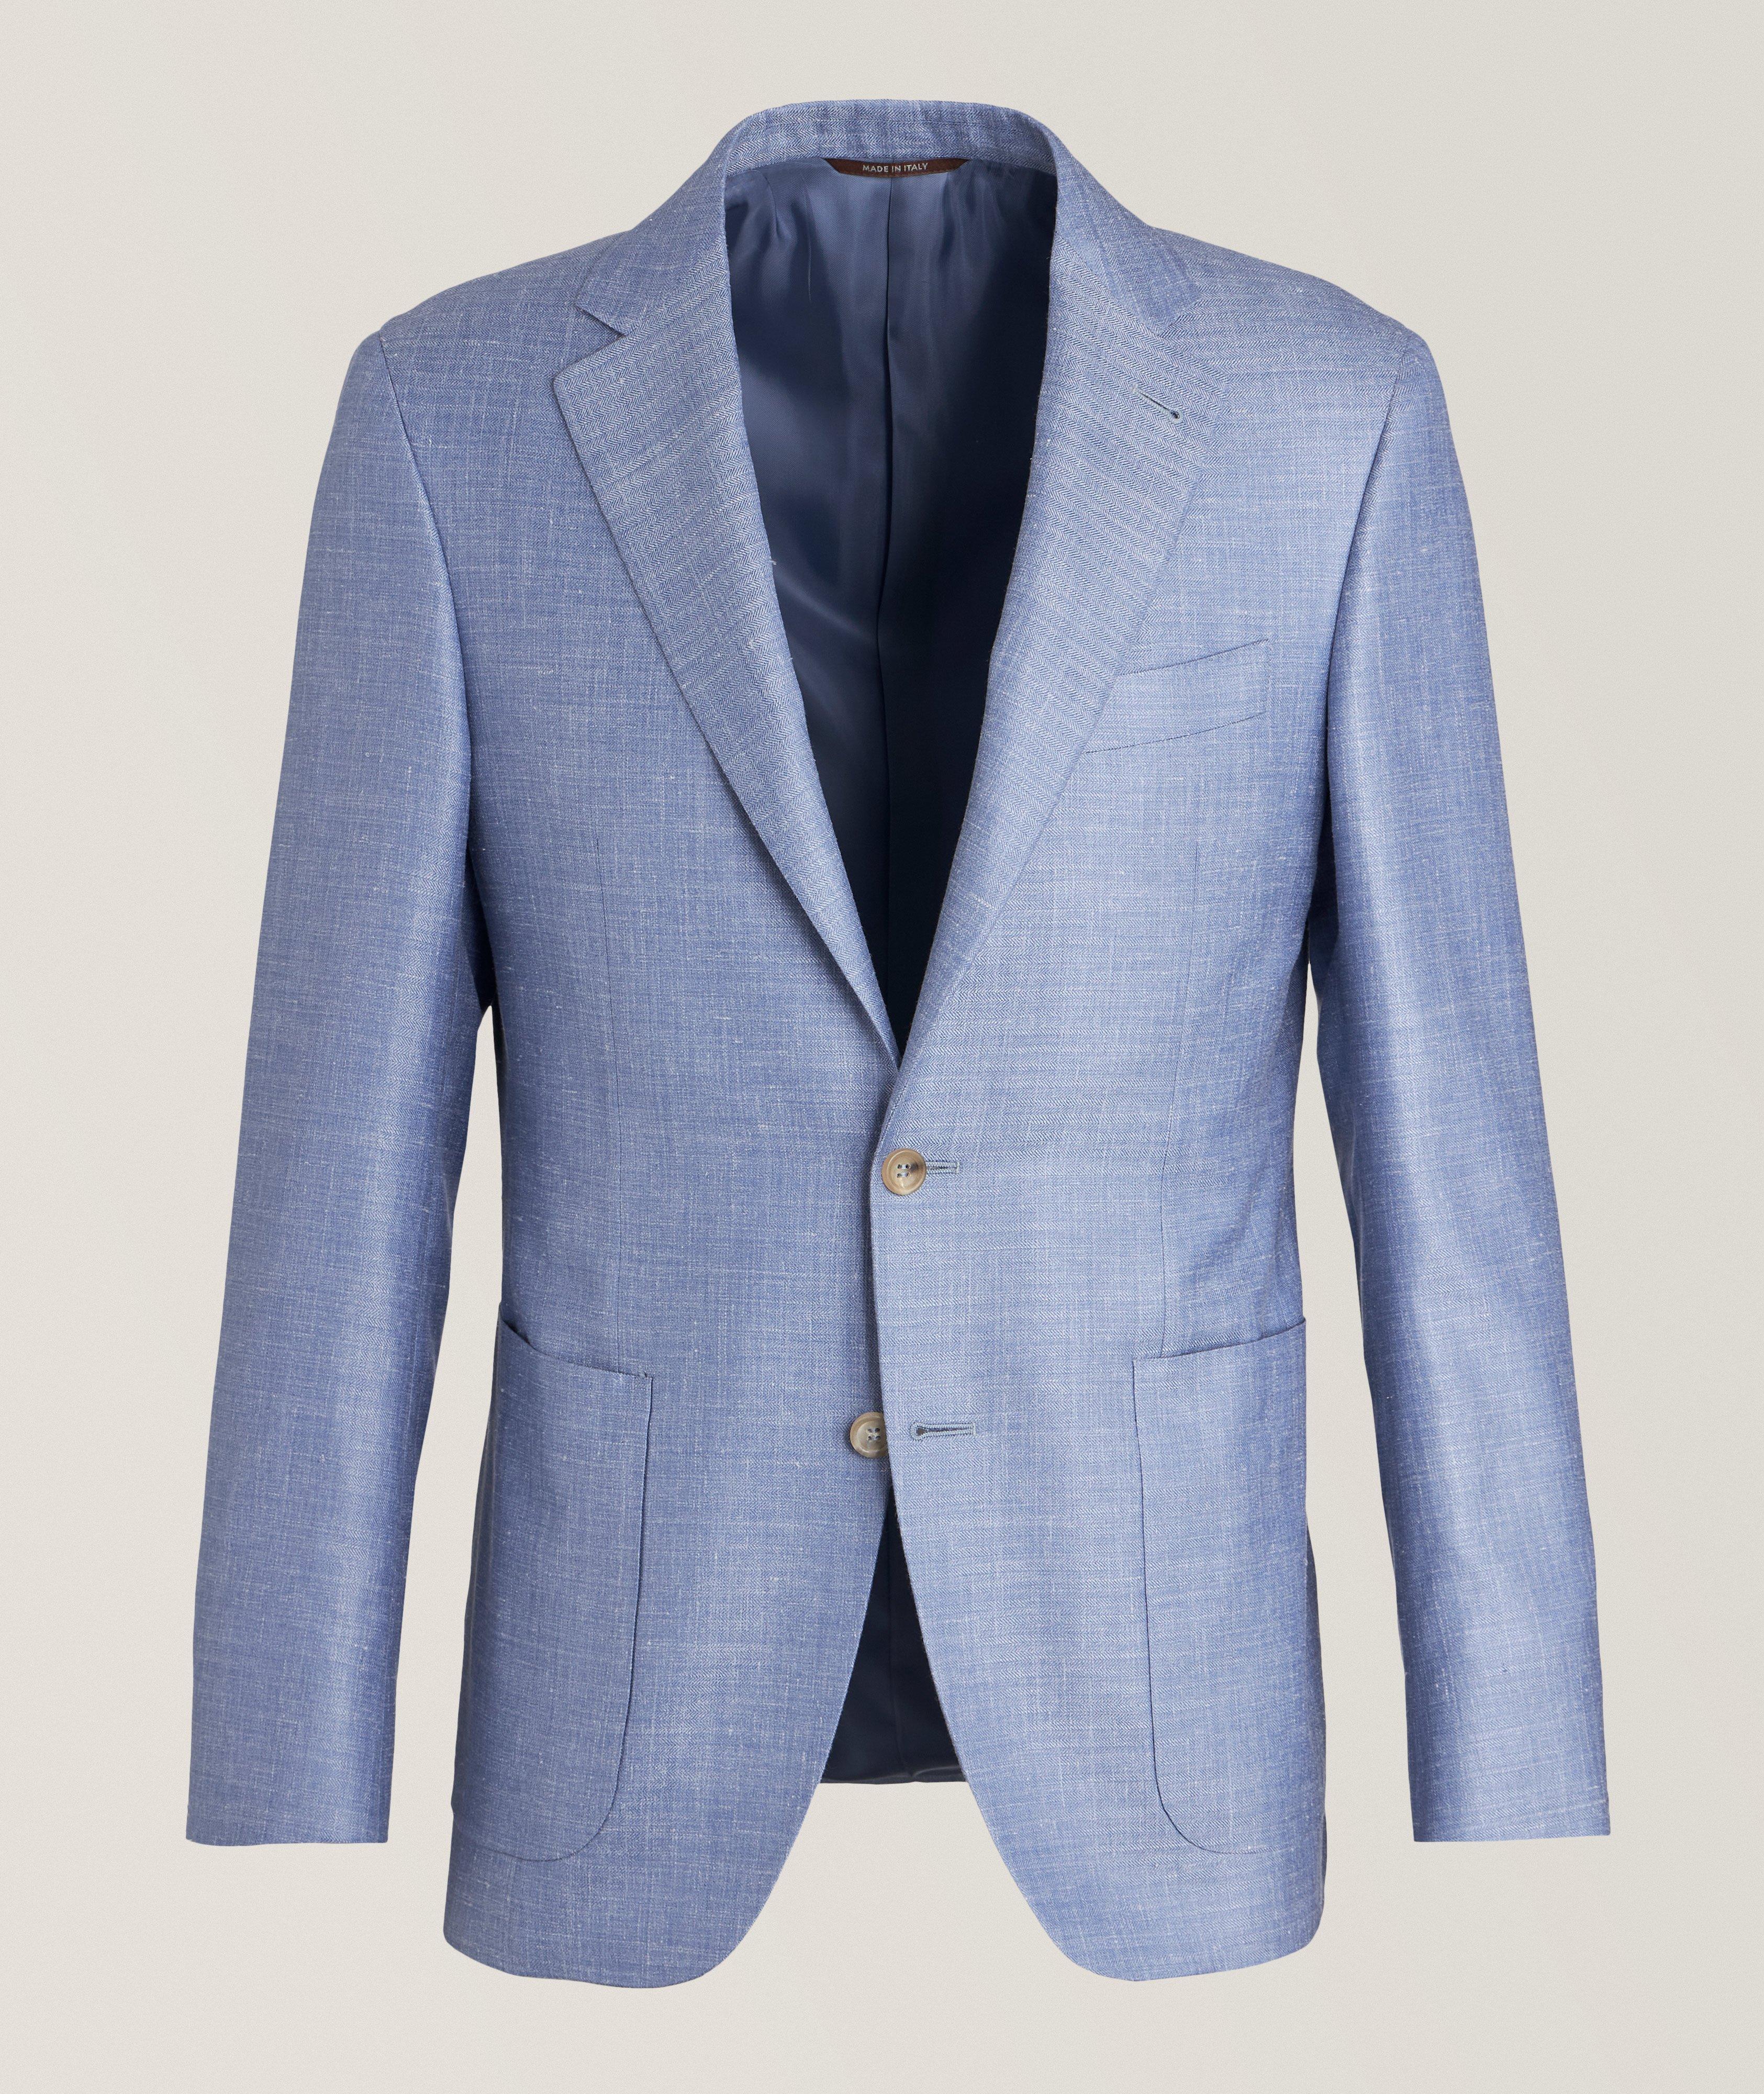 Canali Kei Herringbone Wool, Silk & Linen Sport Jacket